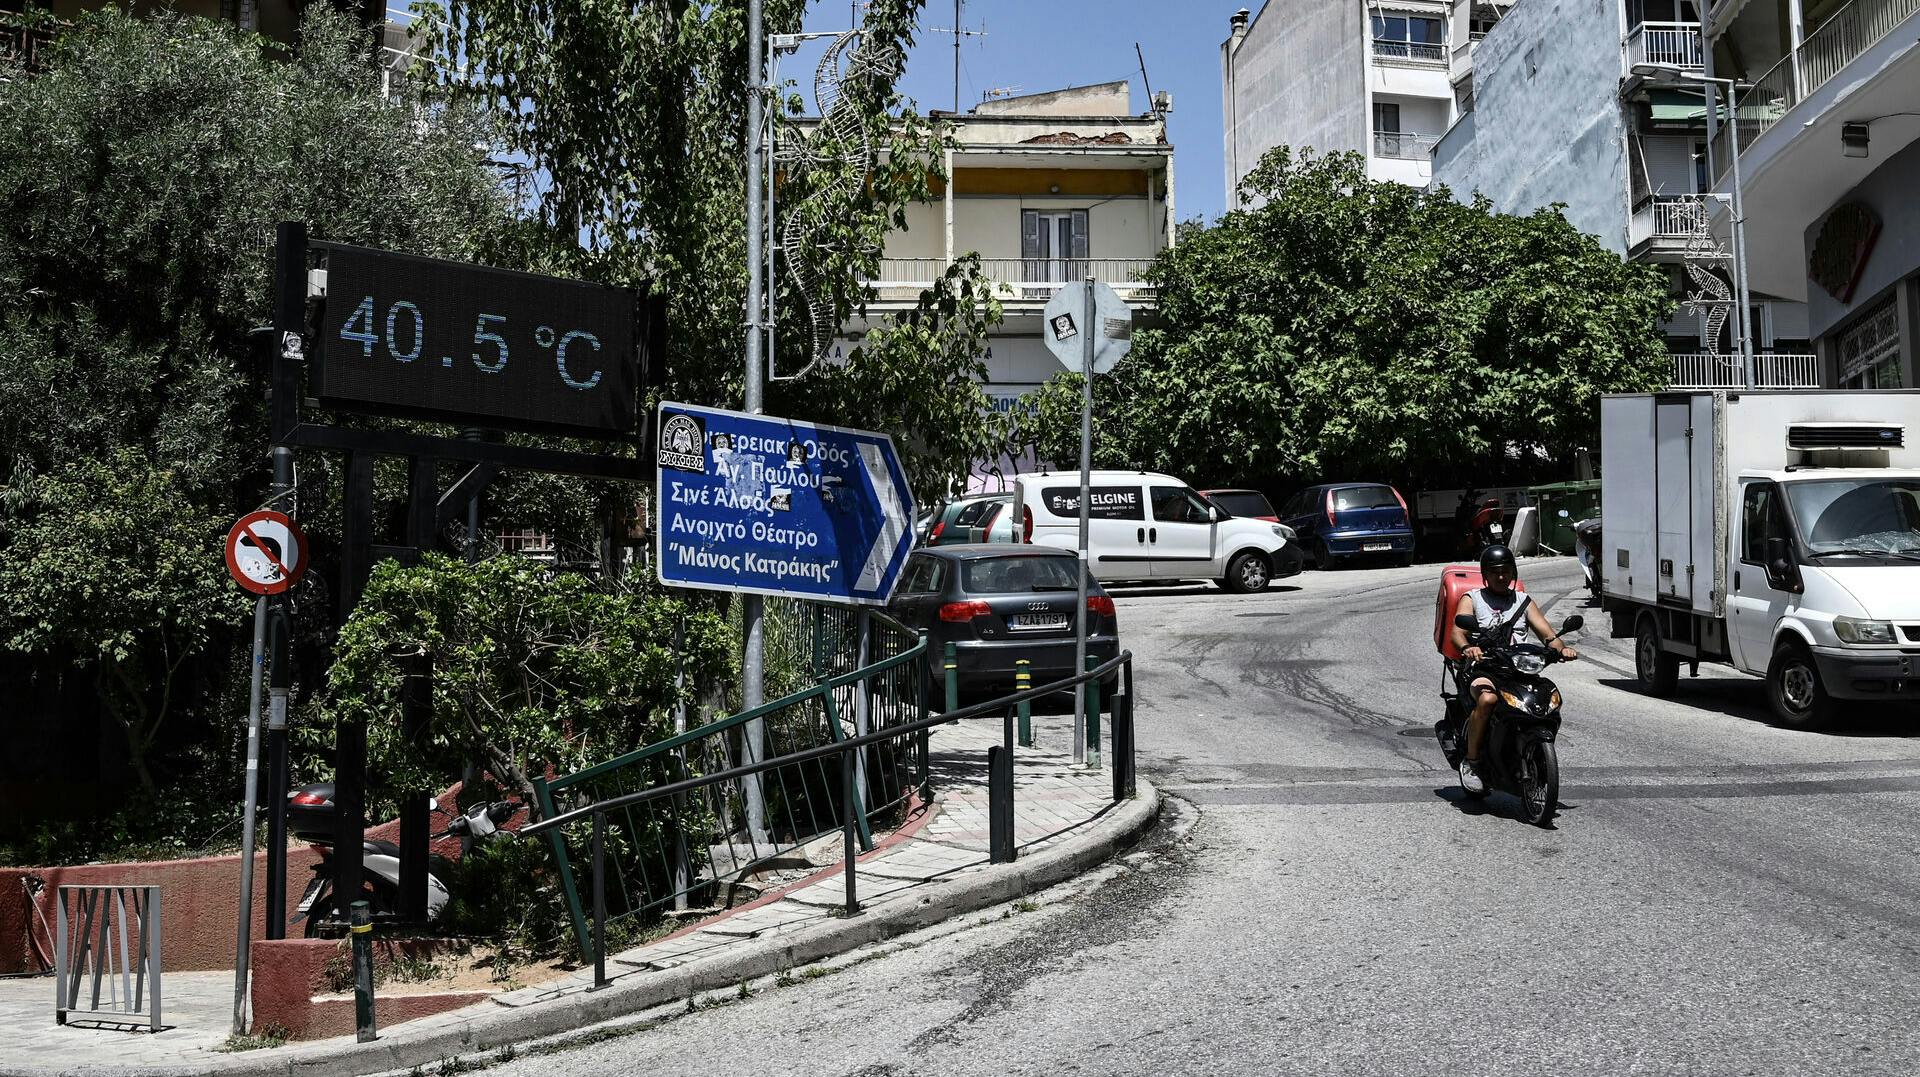 Athens nye borgmester vil plante 25.000 træer i løbet af de næste fem år i et forsøg på at afkøle den græske hovedstad i sommermånederne.